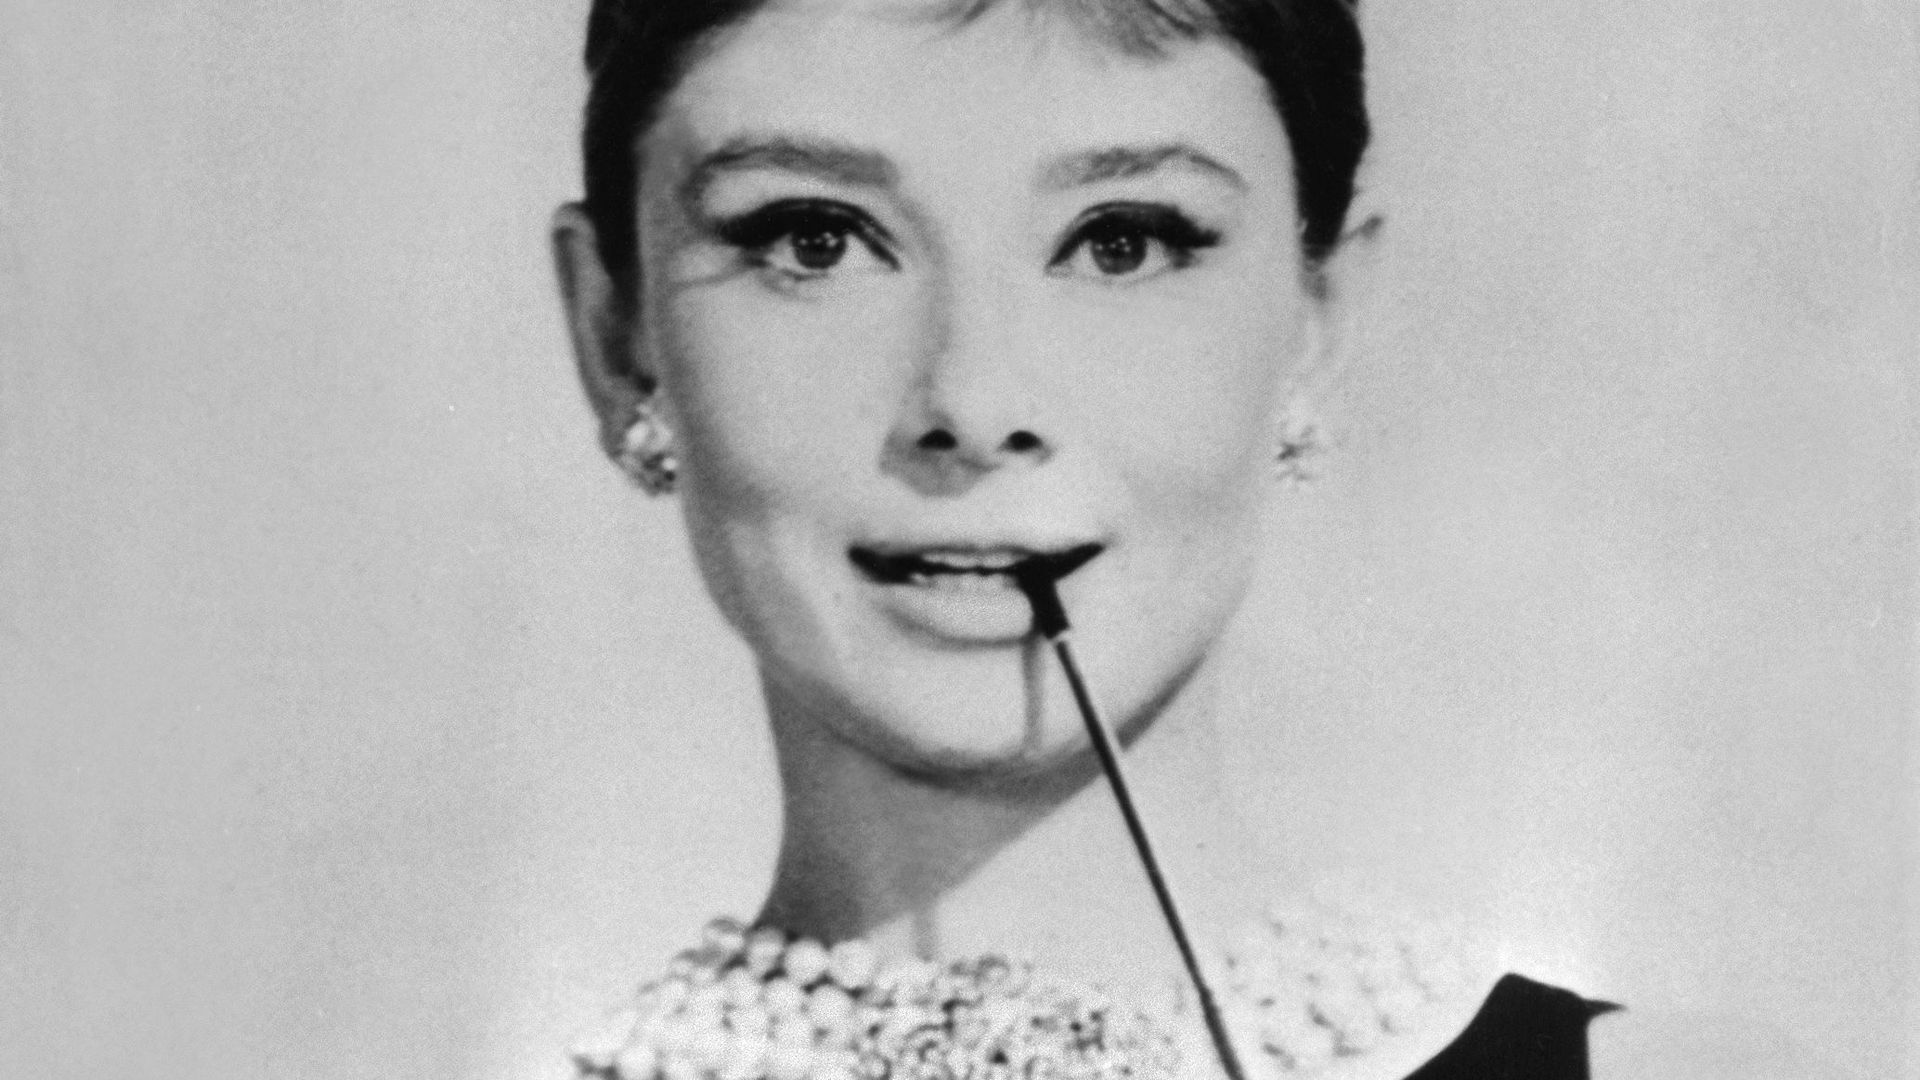 Une série inspirée de la vie d'Audrey Hepburn en développement par les producteurs de "The Young Pope"